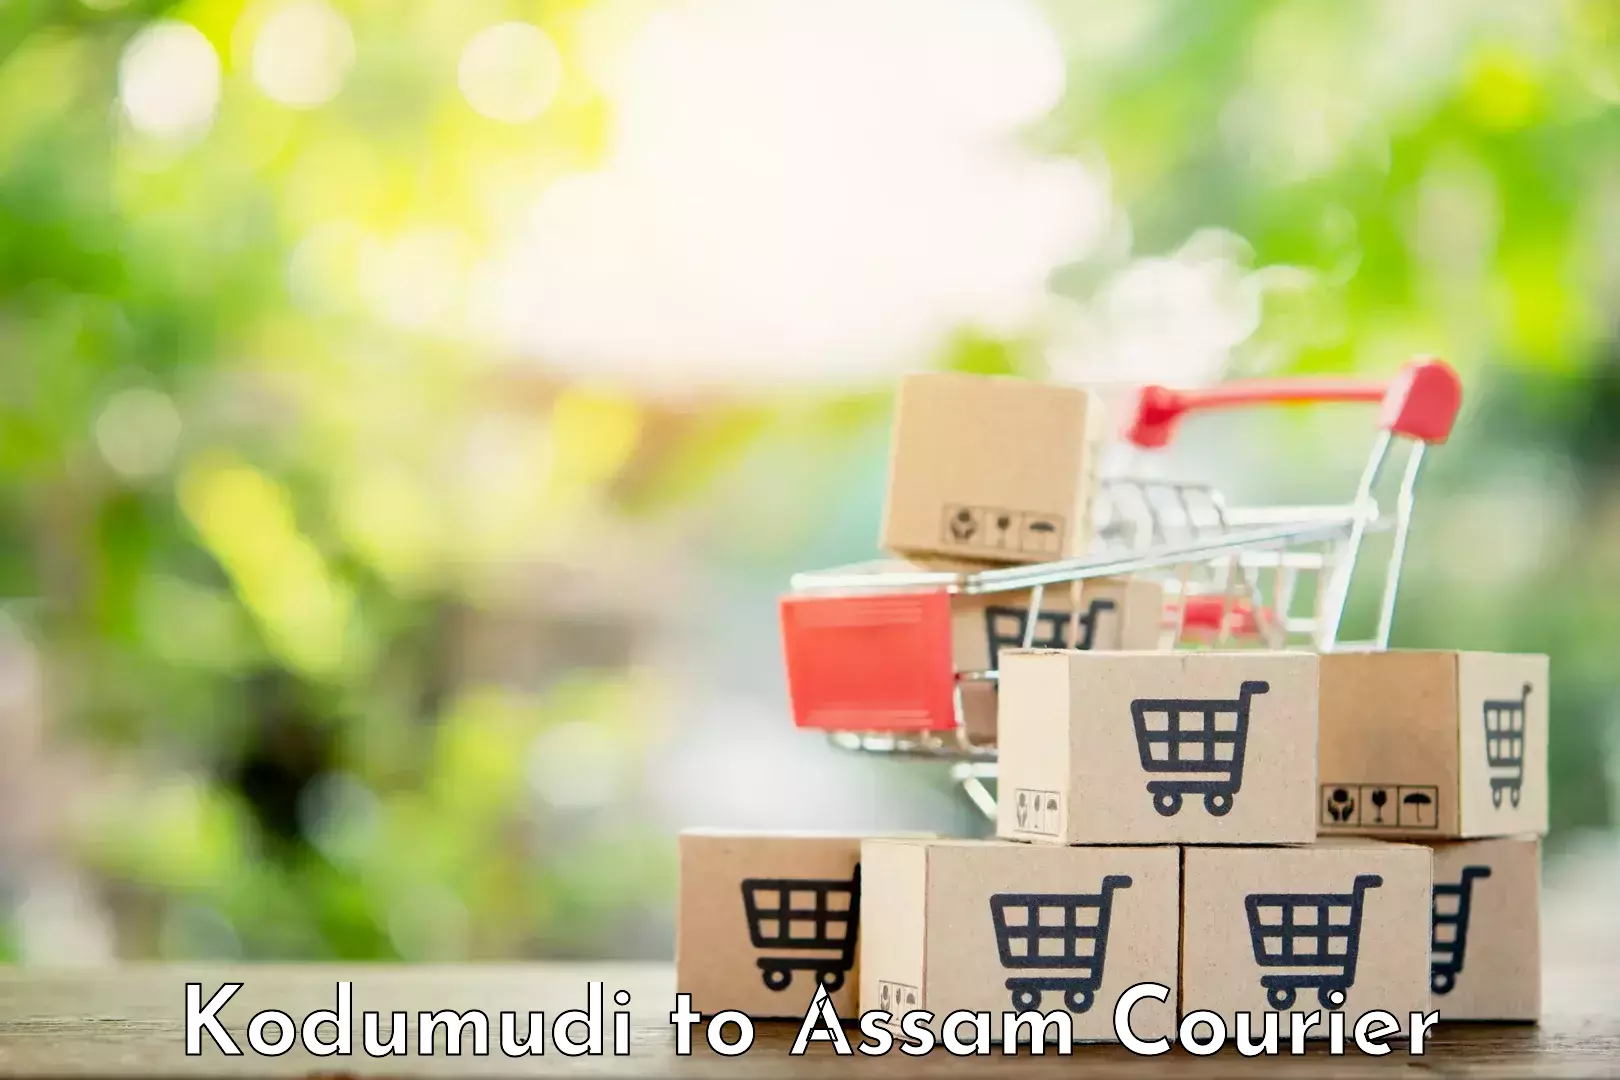 Discount courier rates Kodumudi to Kalaigaon